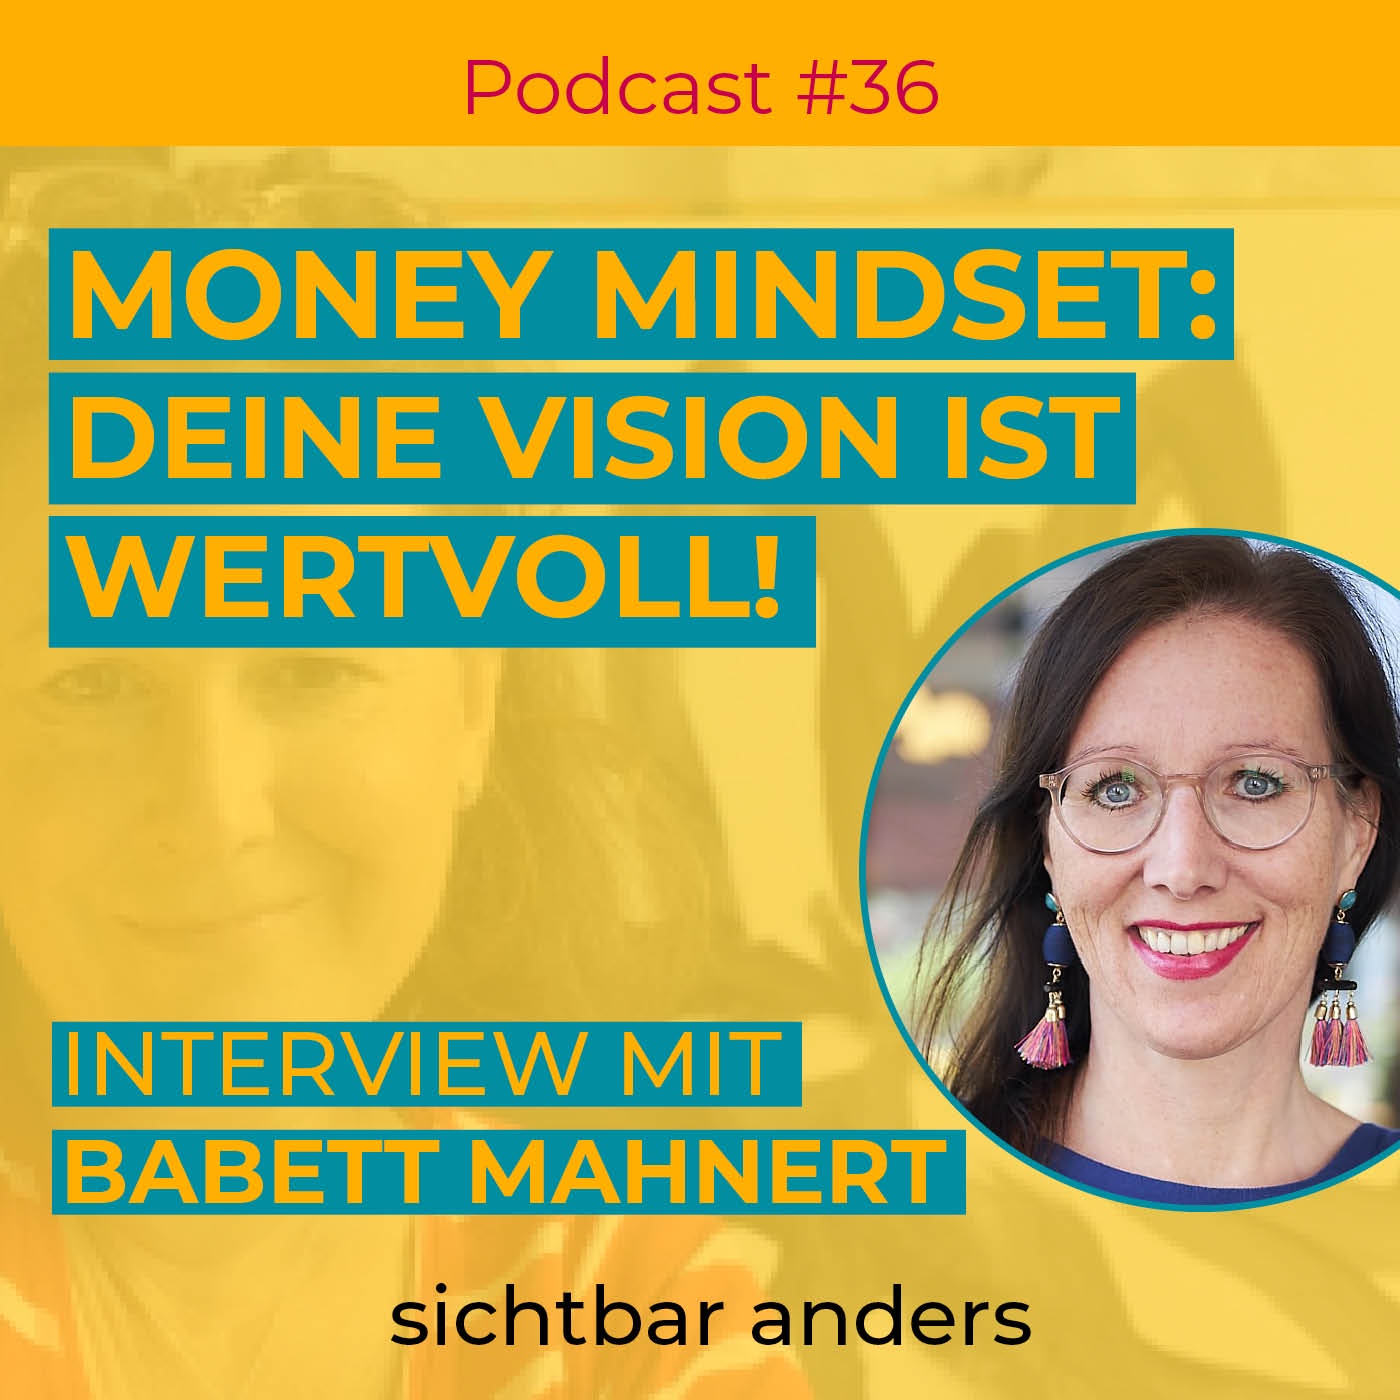 Money Mindset - Deine Vision ist wertvoll!